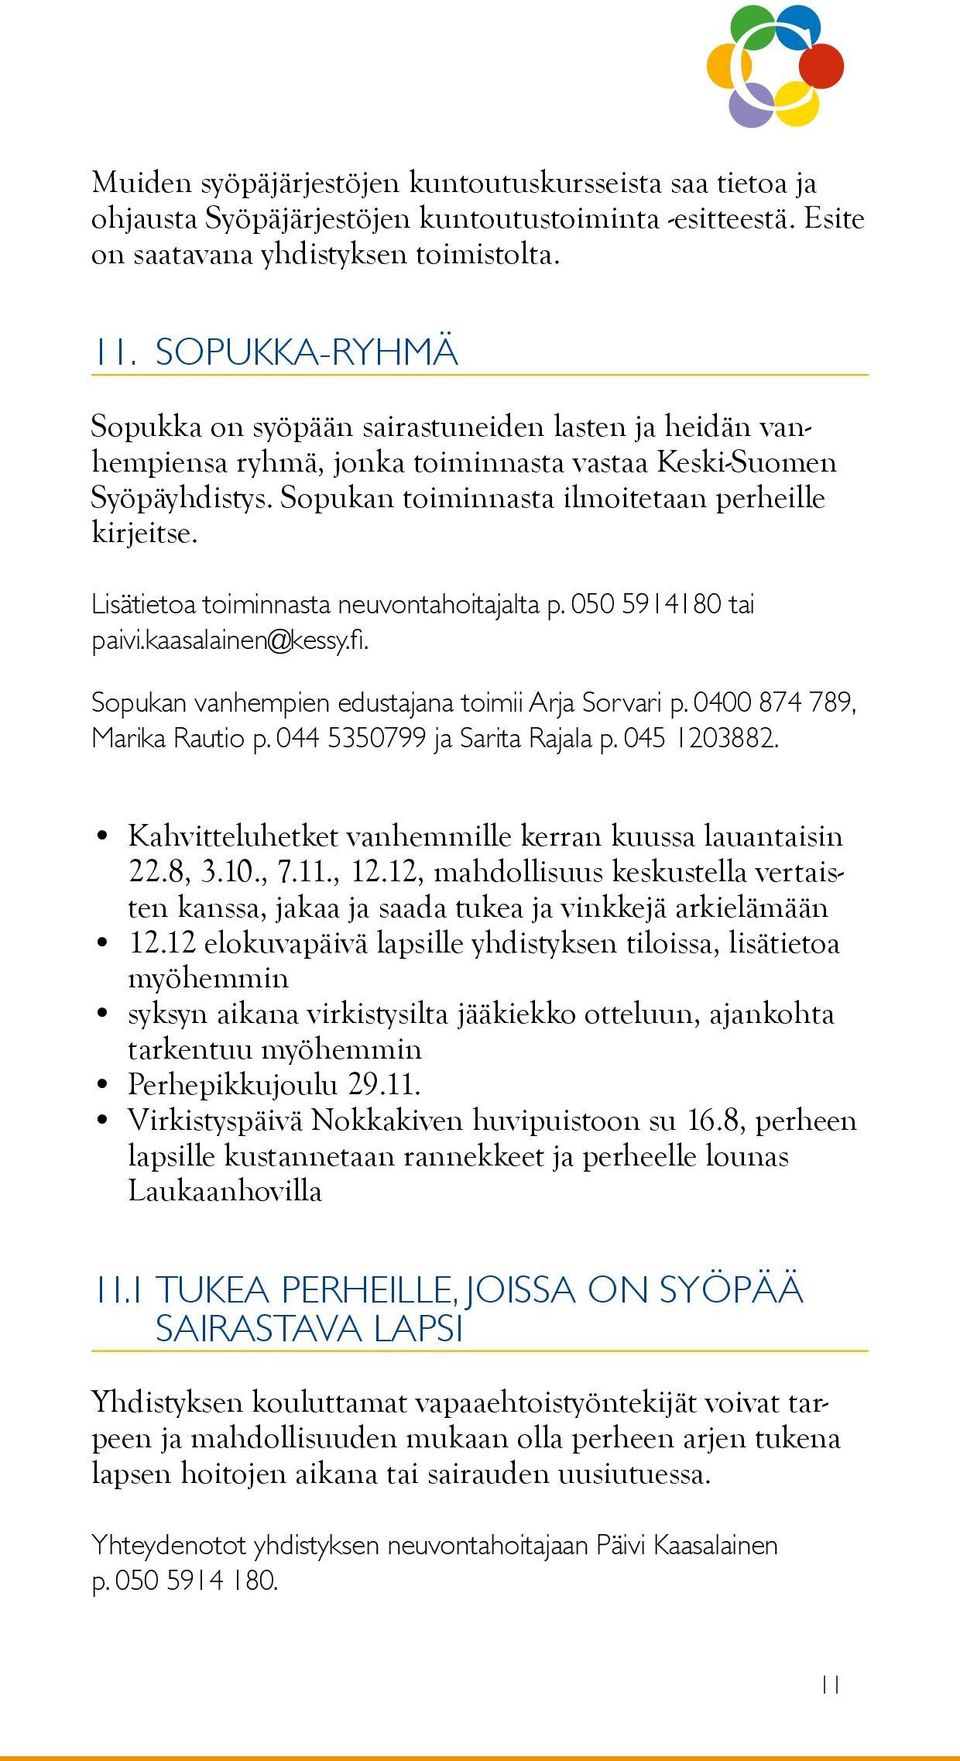 Lisätietoa toiminnasta neuvontahoitajalta p. 050 5914180 tai paivi.kaasalainen@kessy.fi. Sopukan vanhempien edustajana toimii Arja Sorvari p. 0400 874 789, Marika Rautio p.